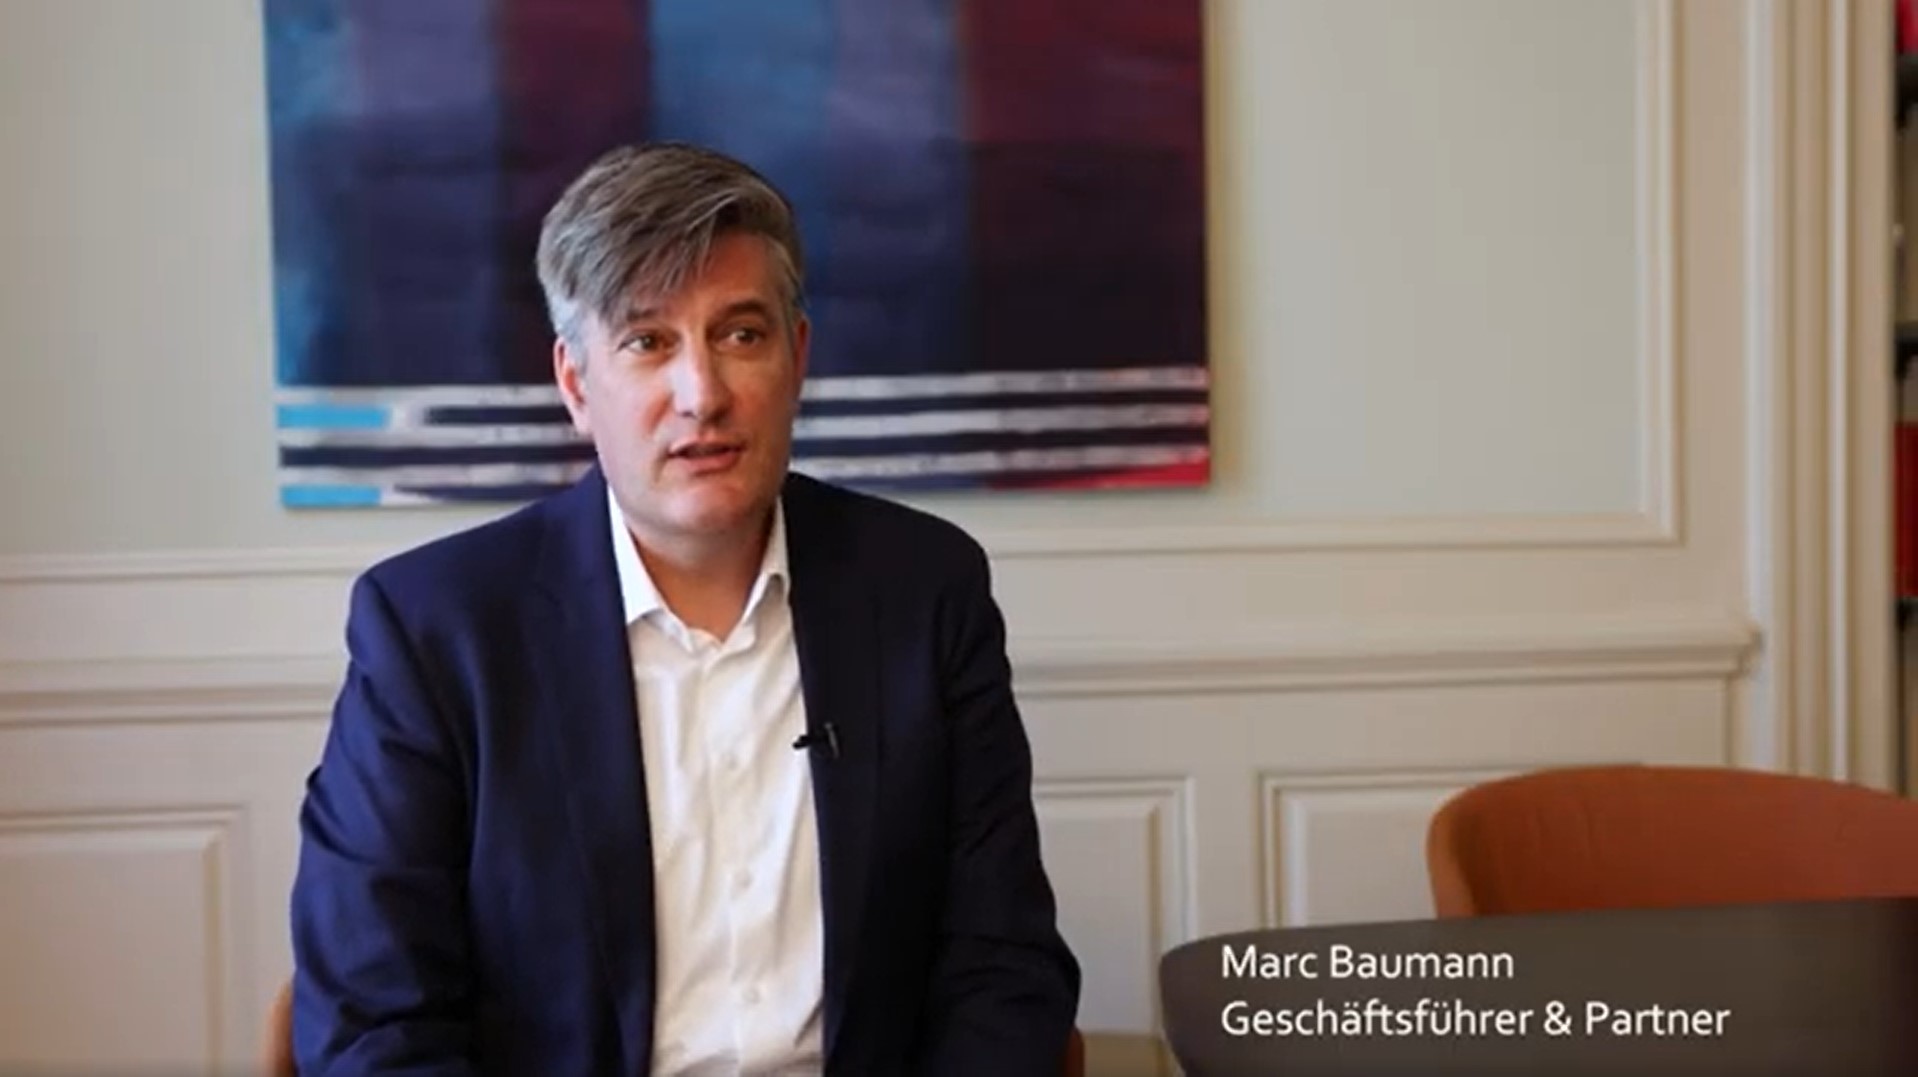 Marc Baumann on ESG